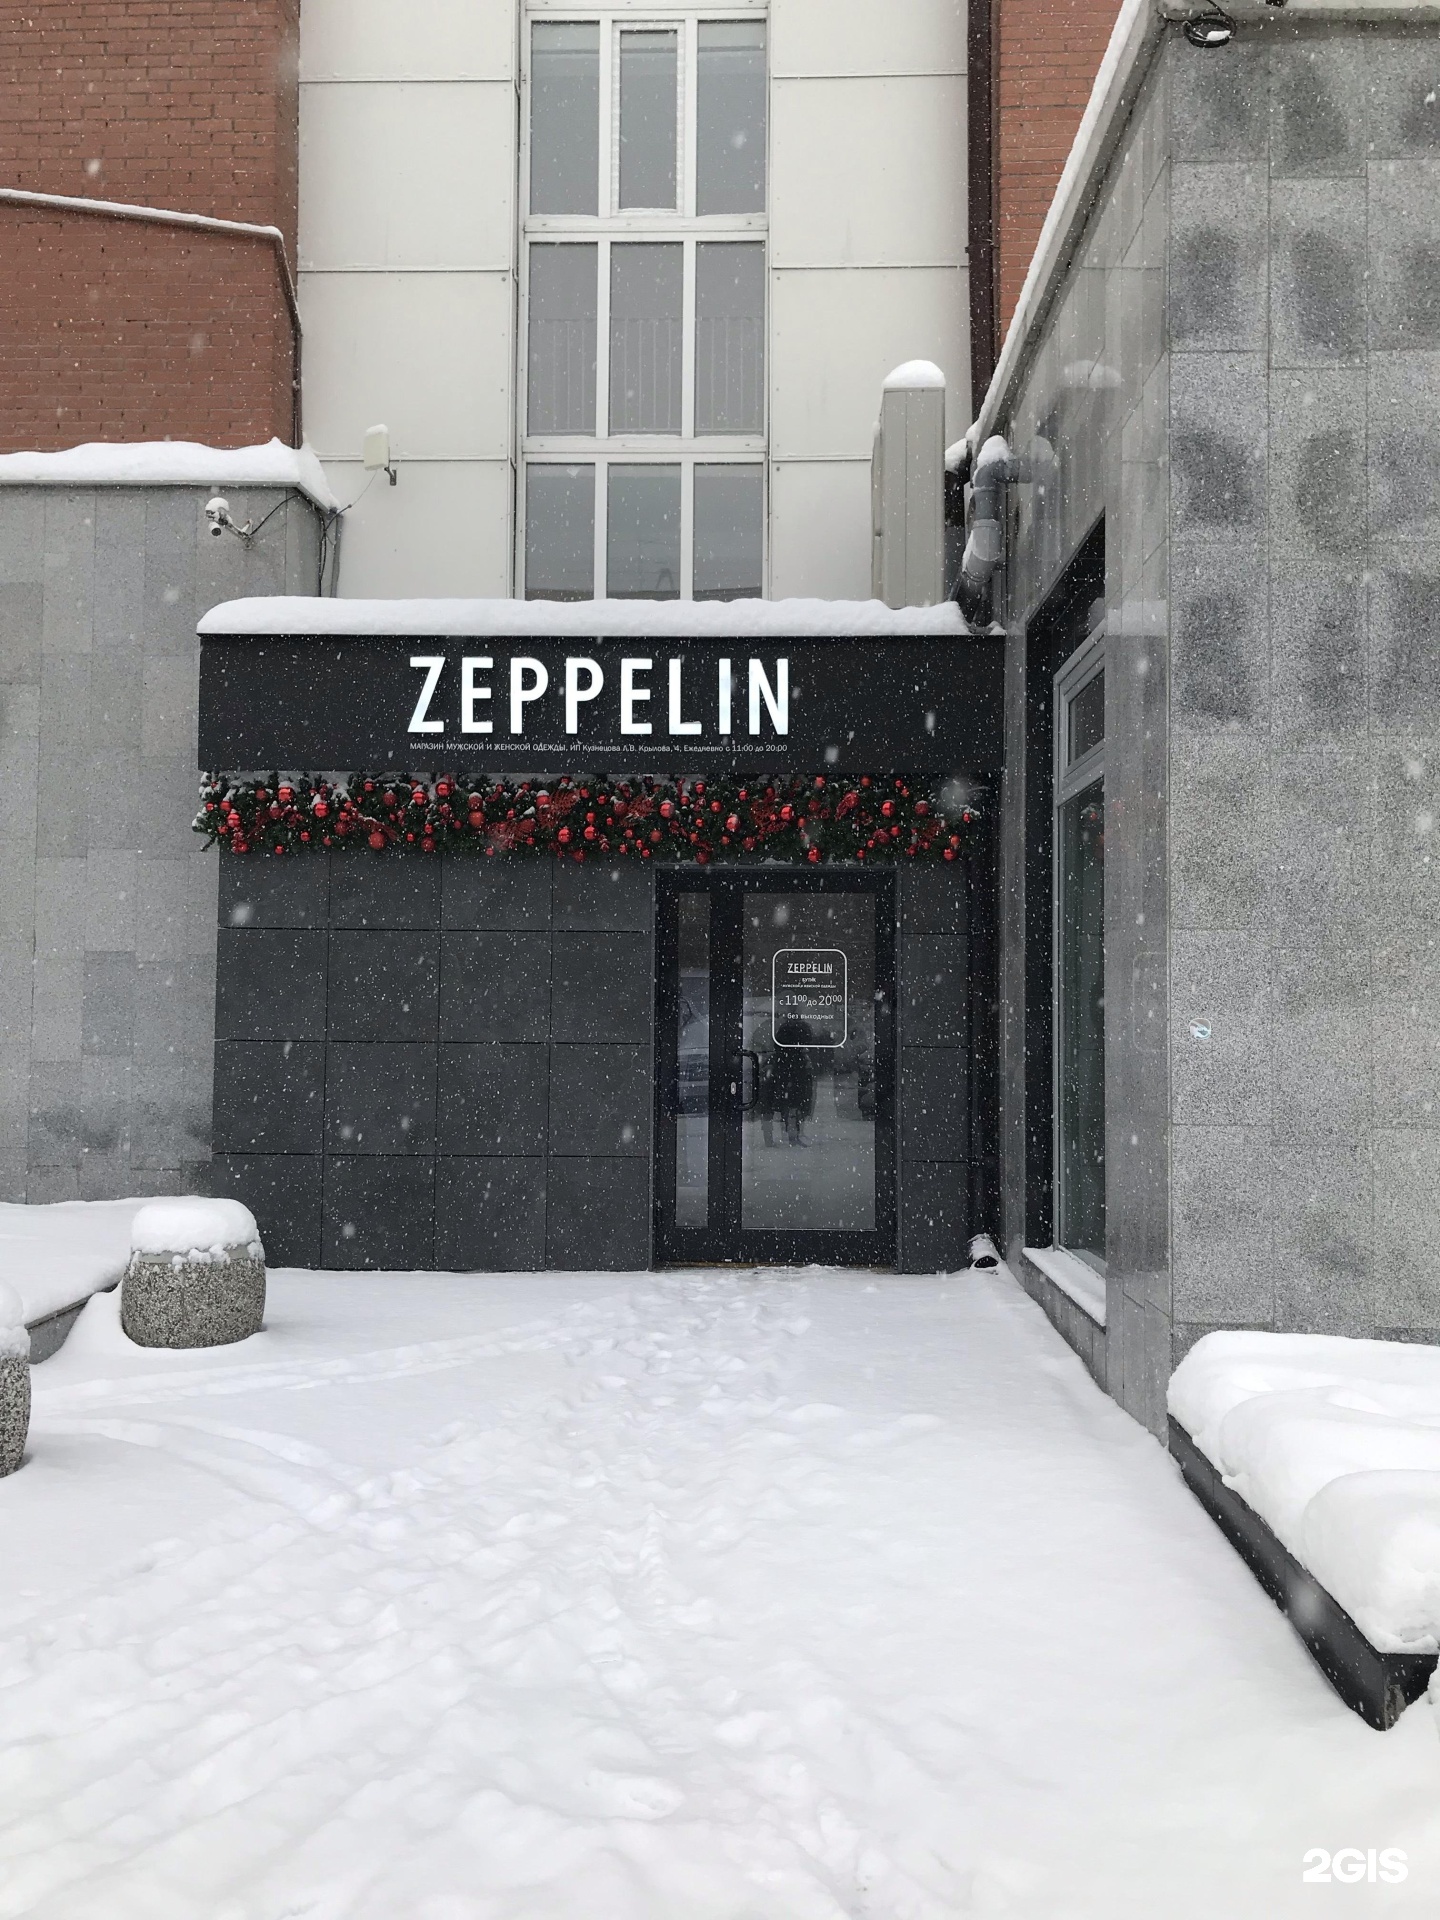 Zeppelin одежда. Магазин Крылова 4 Новосибирск магазины. Крылова 4 новосибирск